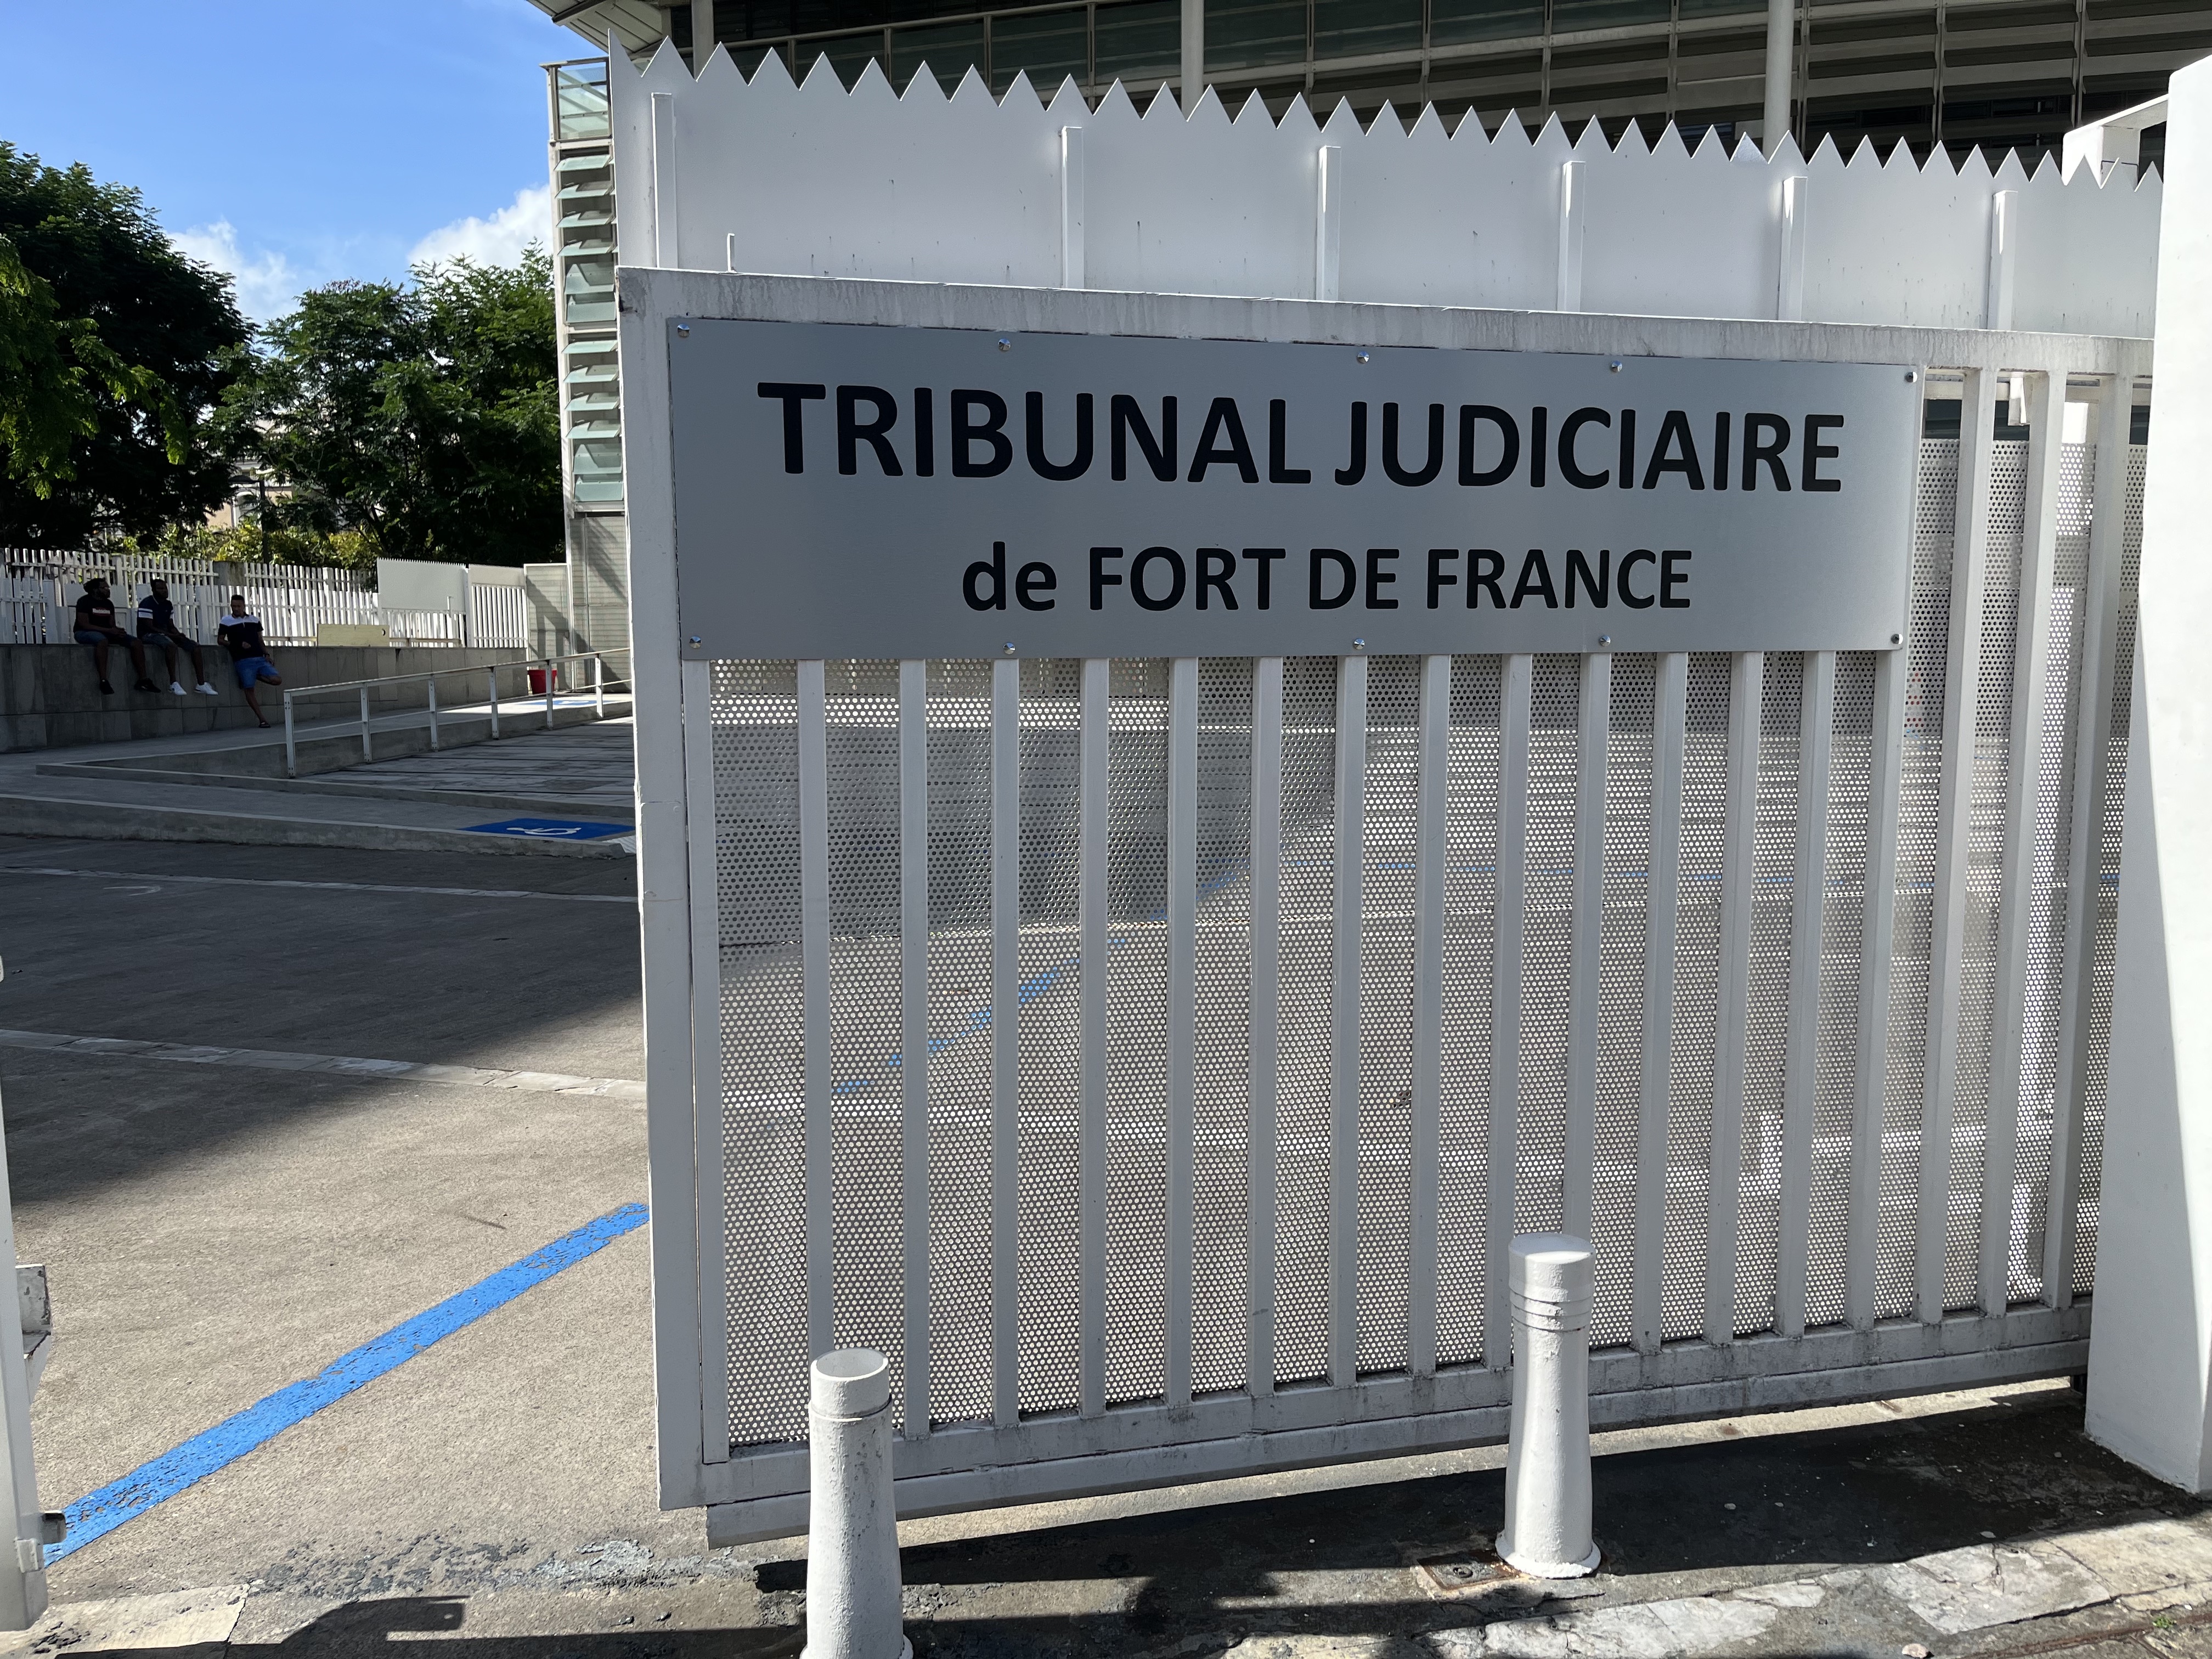     Soupçons de détournements de fonds au CDAD : l’enquête interne qui secoue le palais de Justice de Fort-de-France

